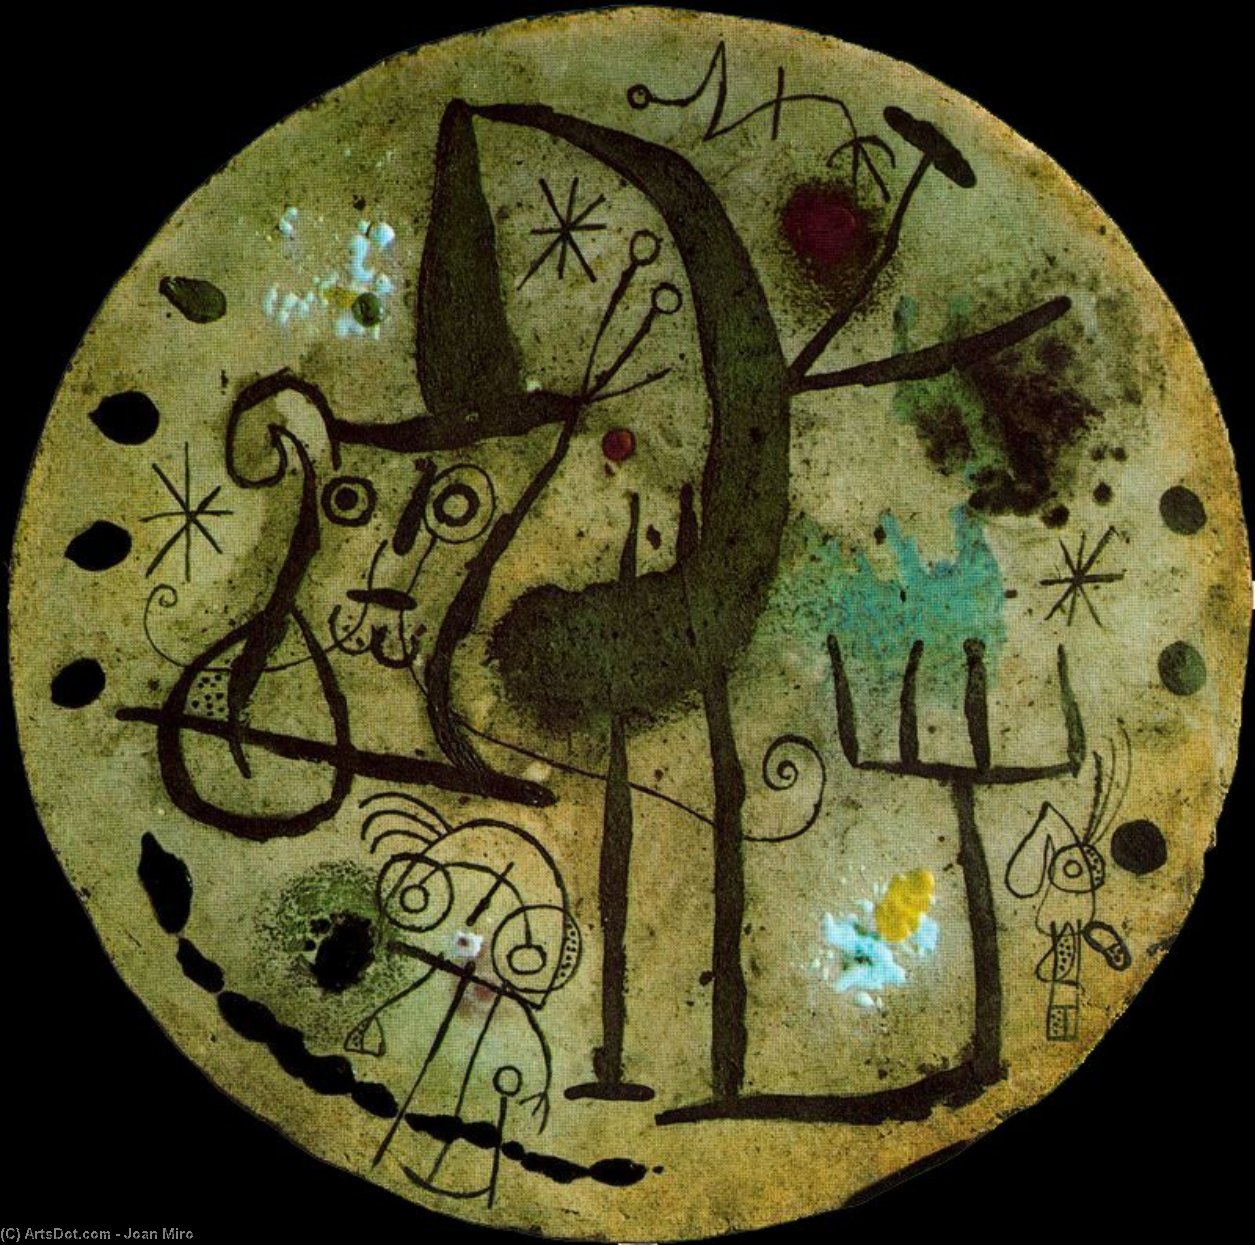 Wikoo.org - موسوعة الفنون الجميلة - اللوحة، العمل الفني Joan Miro - Placa redonda